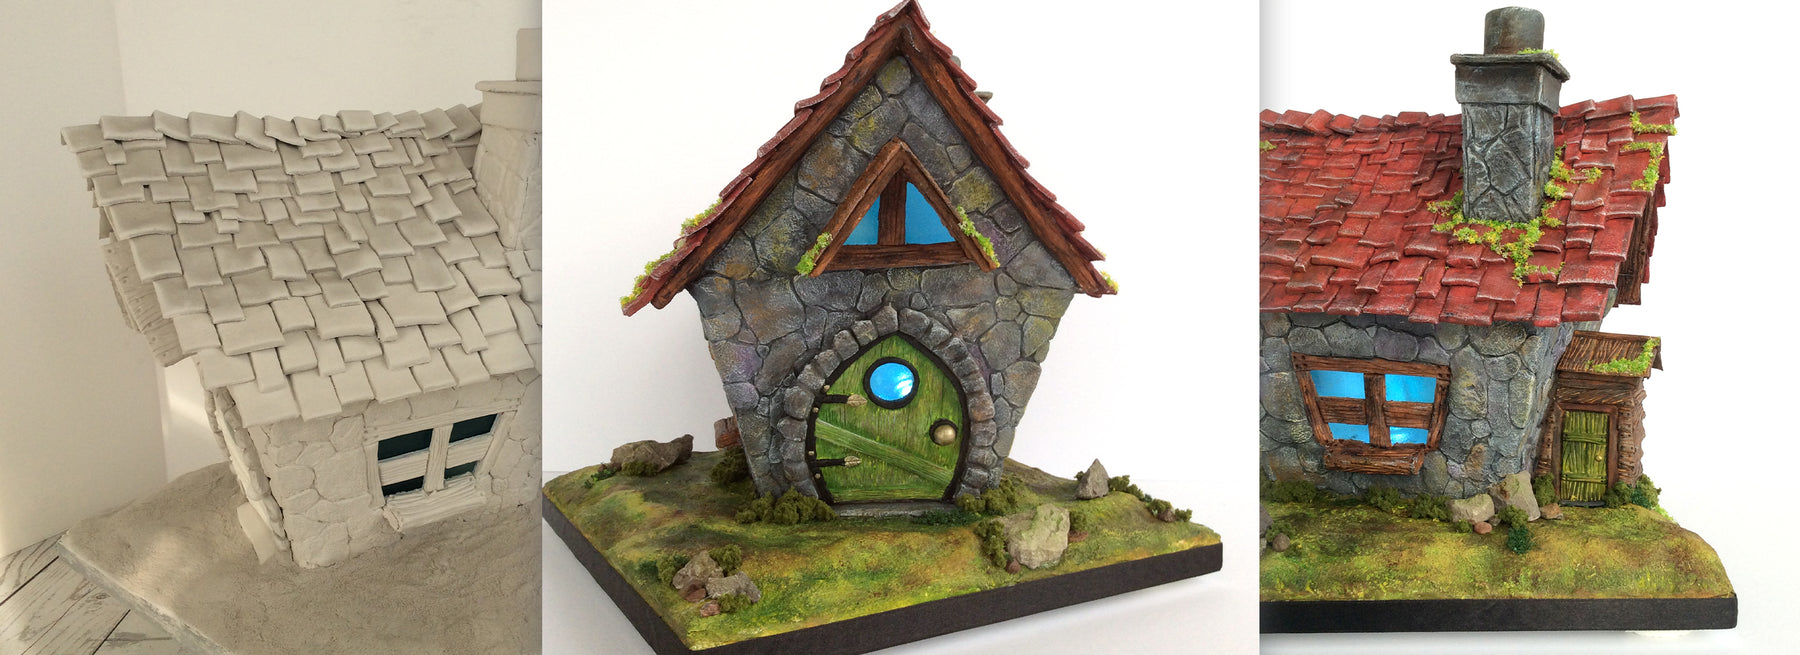 Make a Magical Fairy House